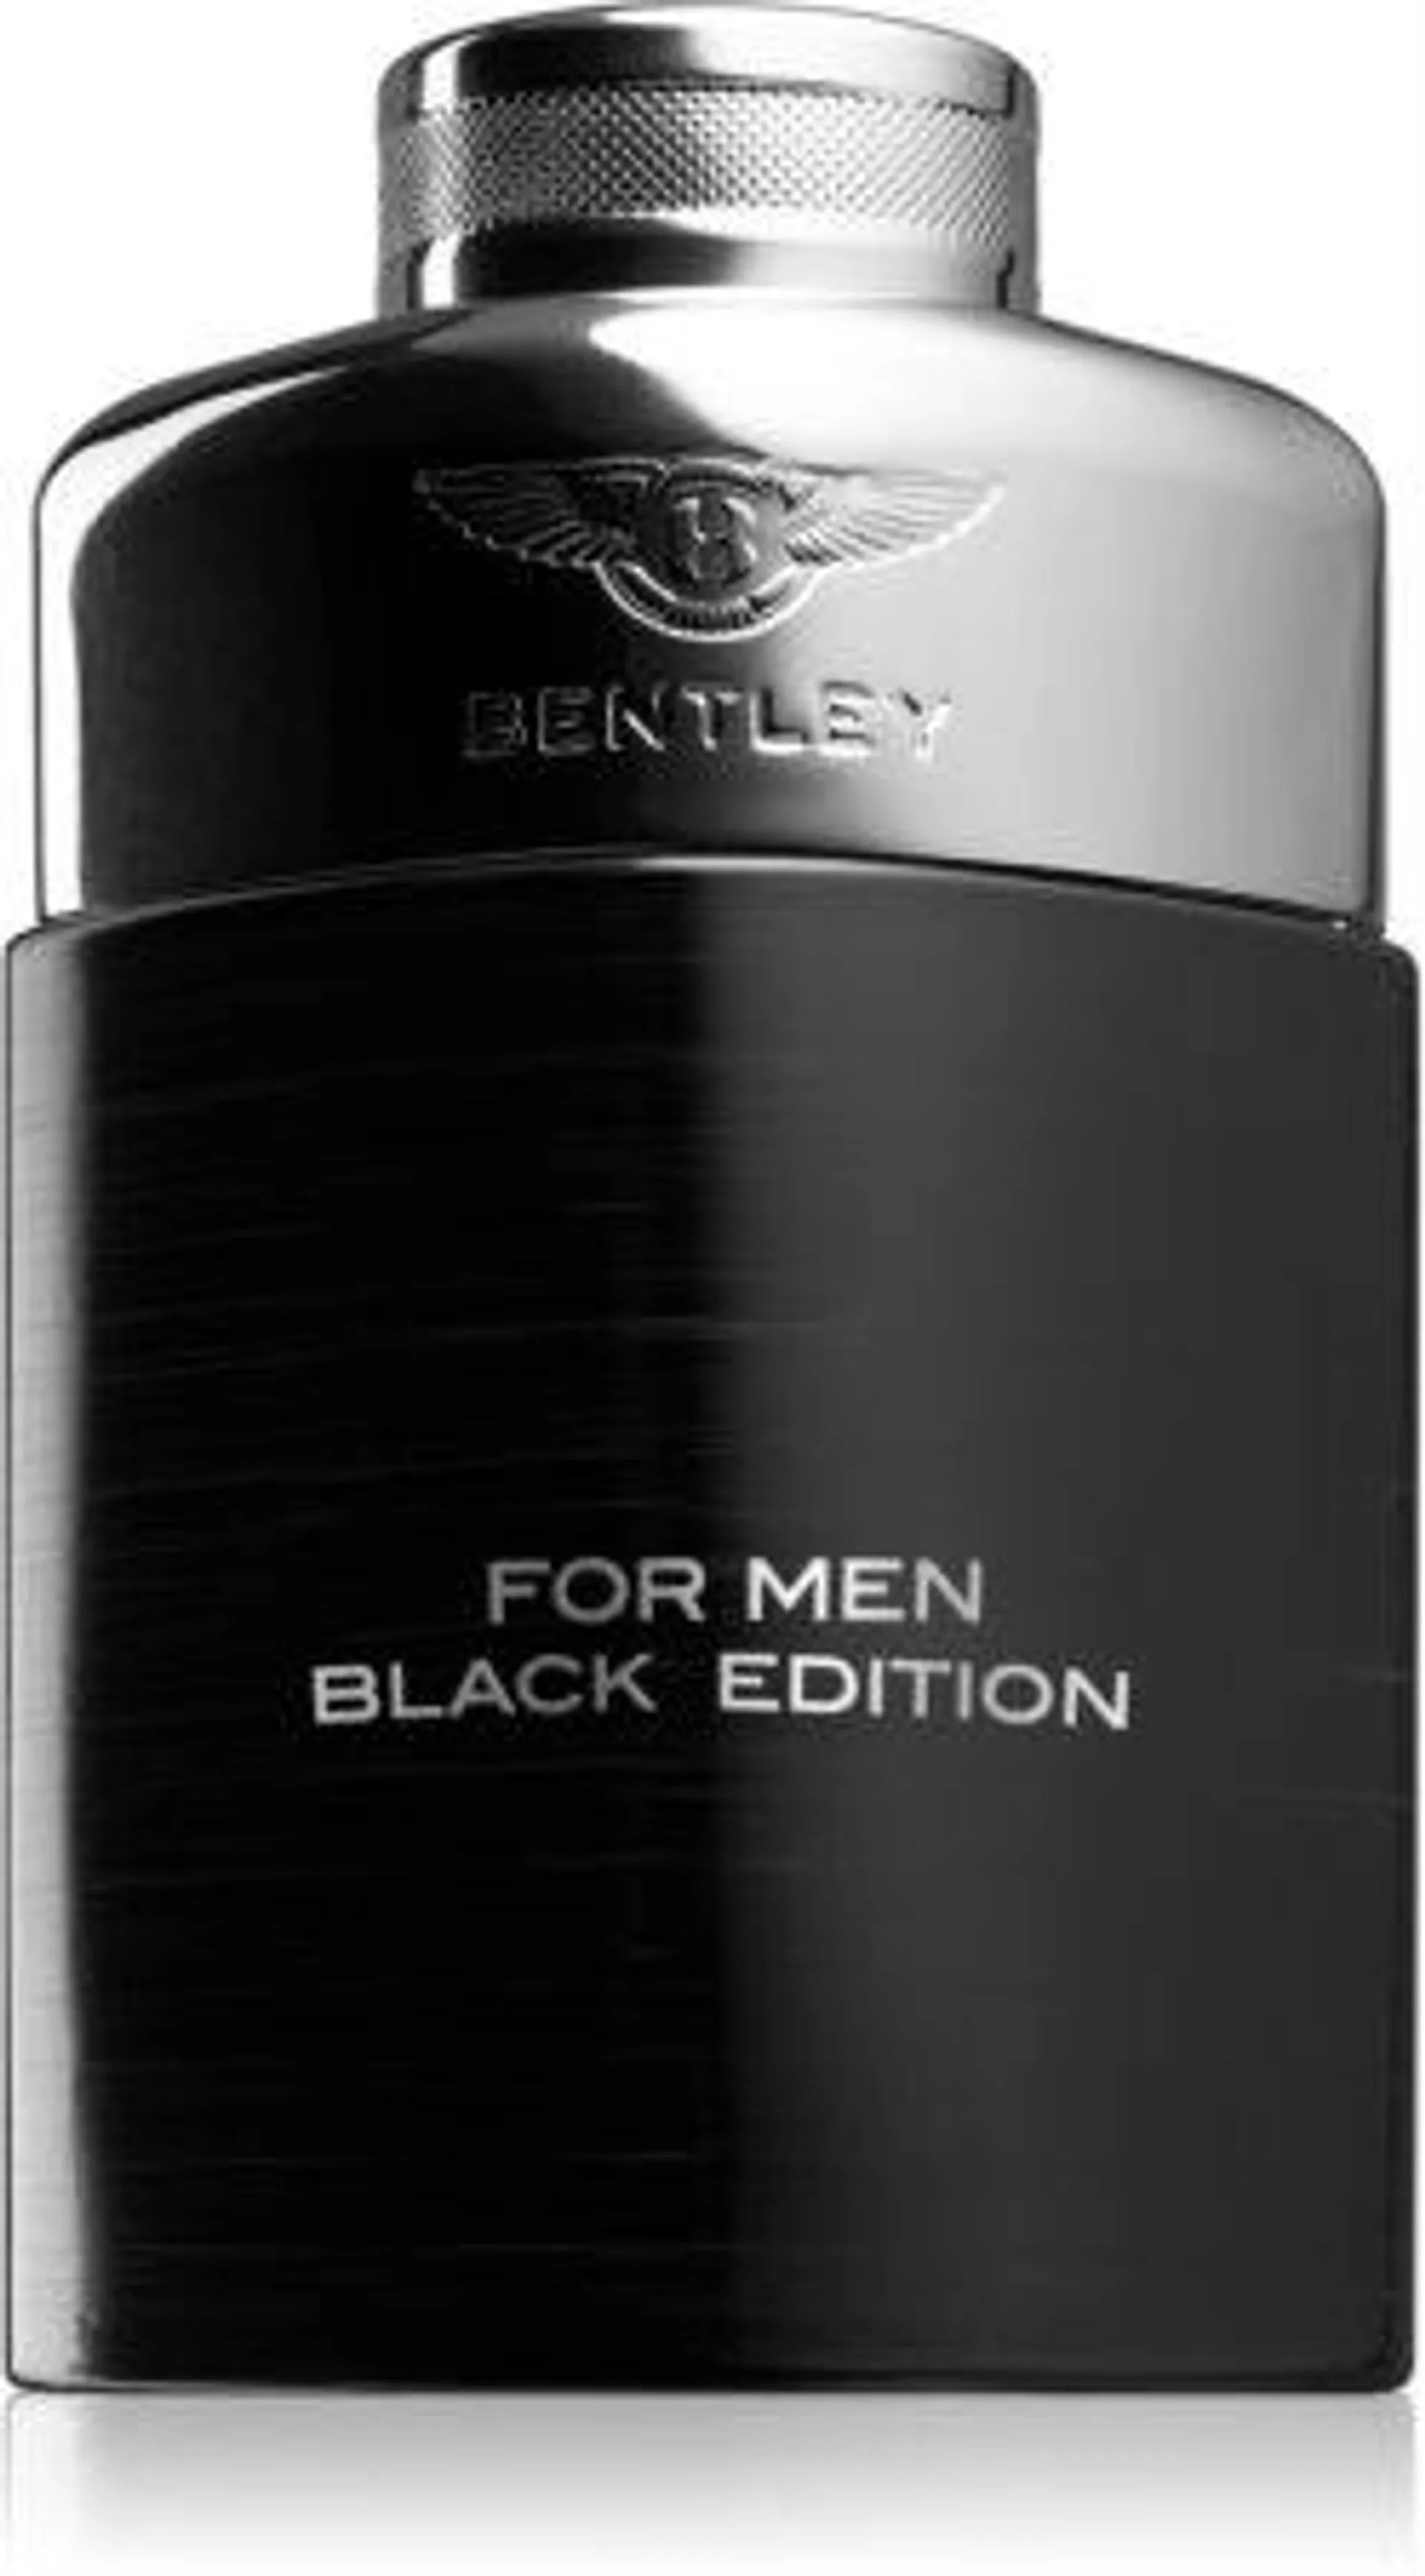 For Men Black Edition